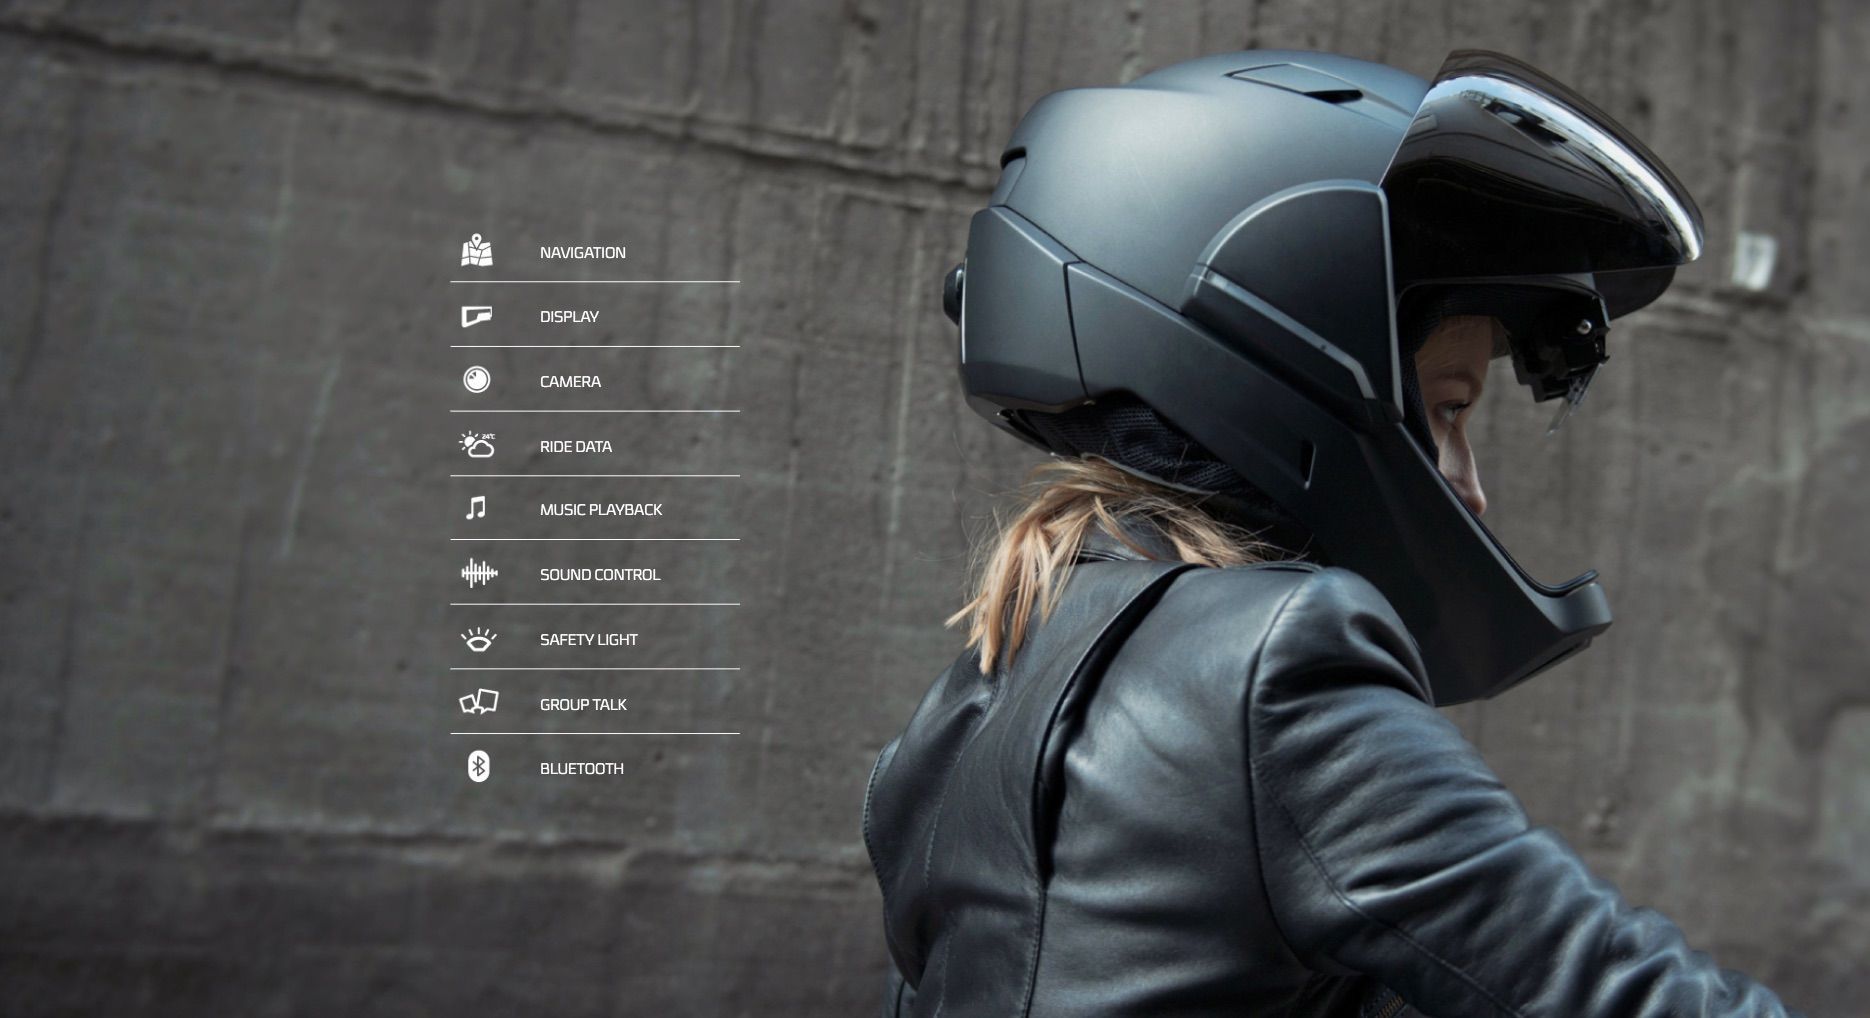 landen mentaal ventilator Will The Crosshelmet X1 Hud Smart Helmet Transform How You Ride? | Blogpost  | EatSleepRIDE